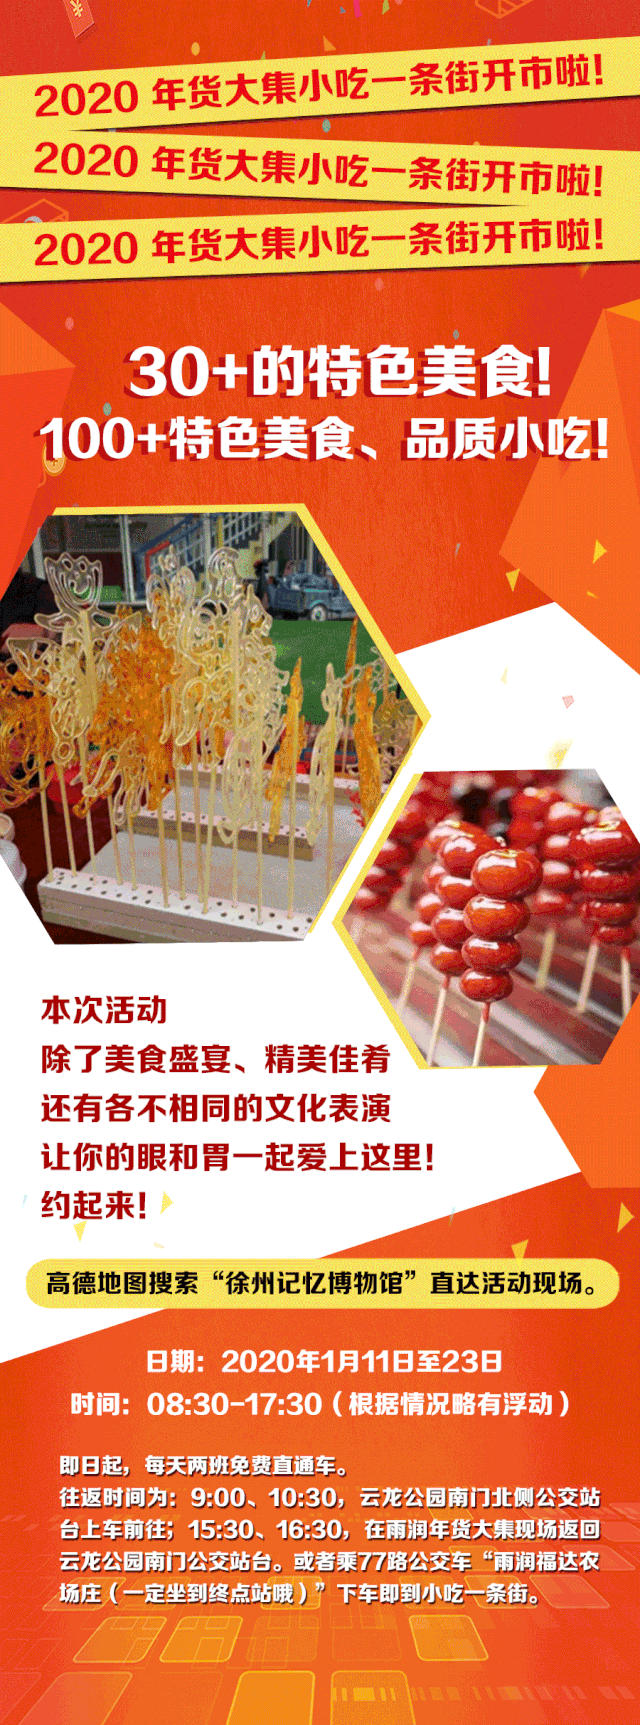 _快领券！惊动半个徐州城的年货大集+小吃盛会！100+美食免费大放送！